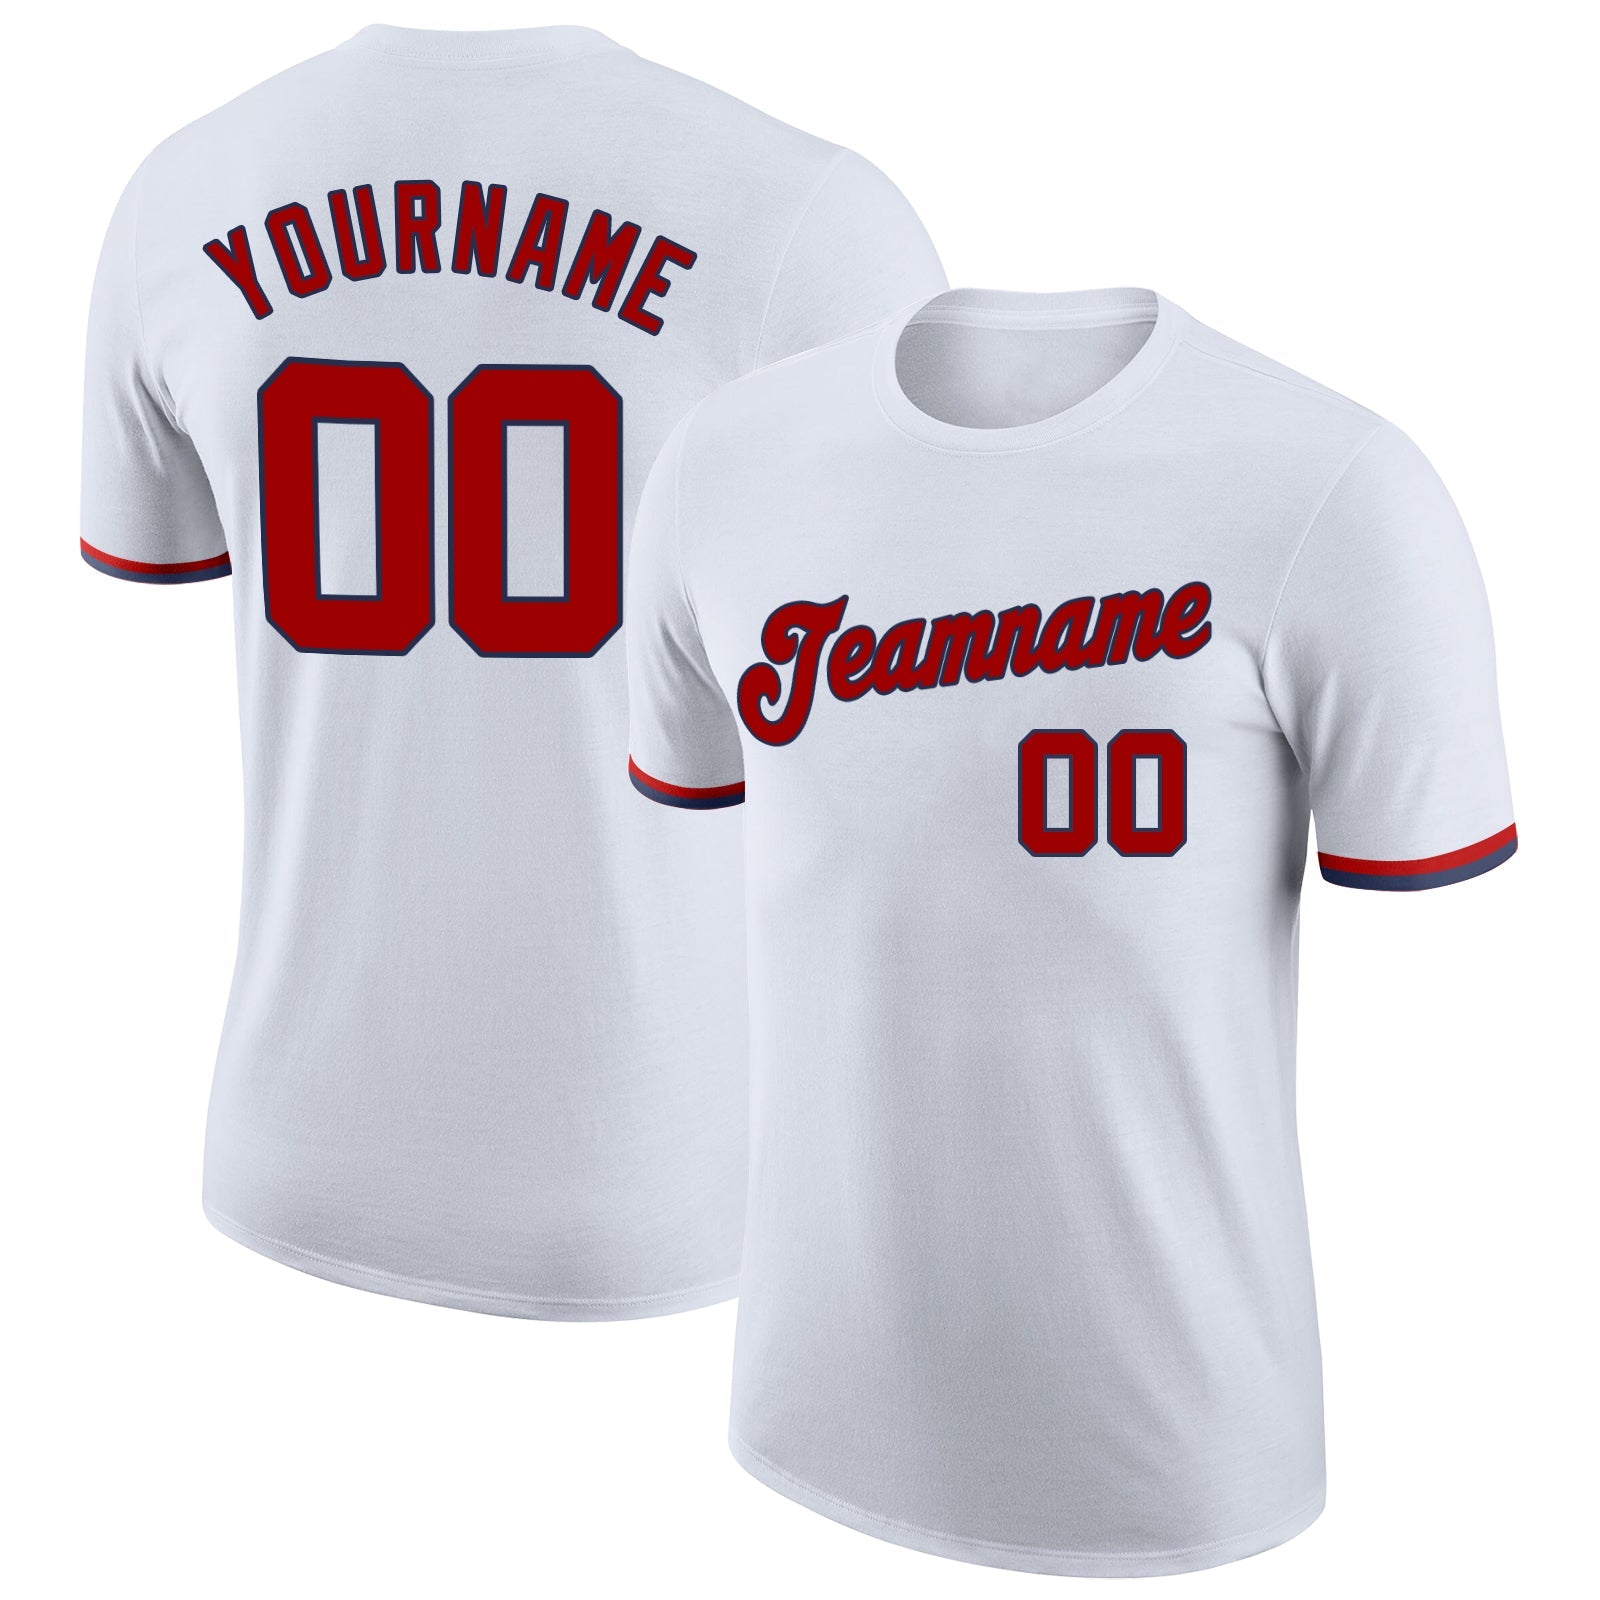 Maßgeschneidertes Performance-T-Shirt in Weiß, Rot und Marineblau